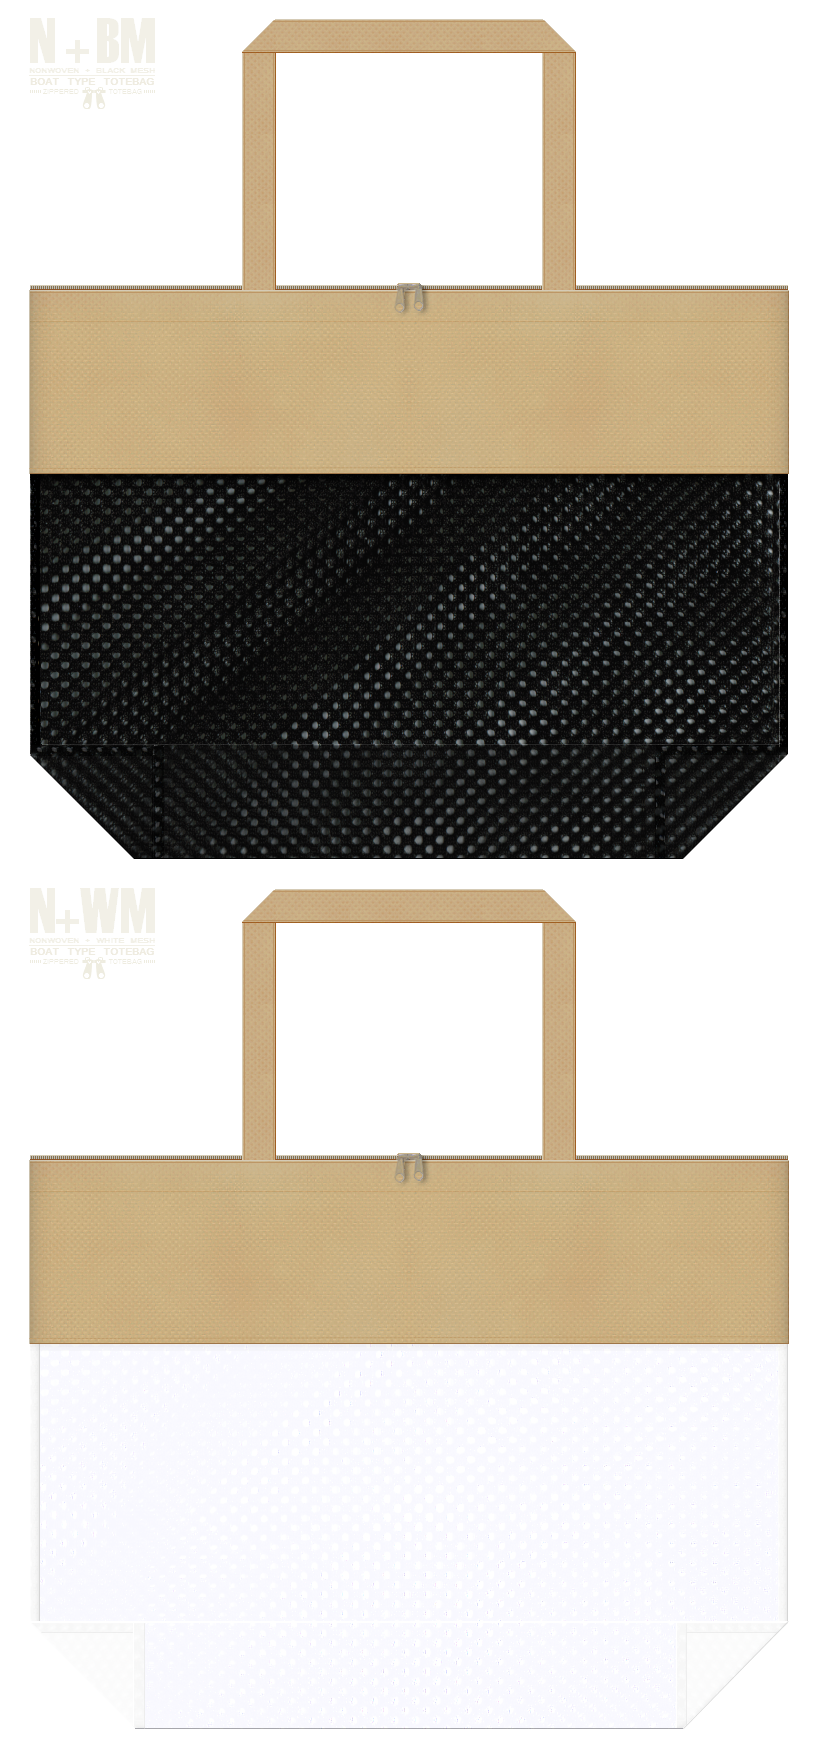 台形型メッシュバッグのカラーシミュレーション：黒色・白色メッシュとカーキ色不織布の組み合わせ